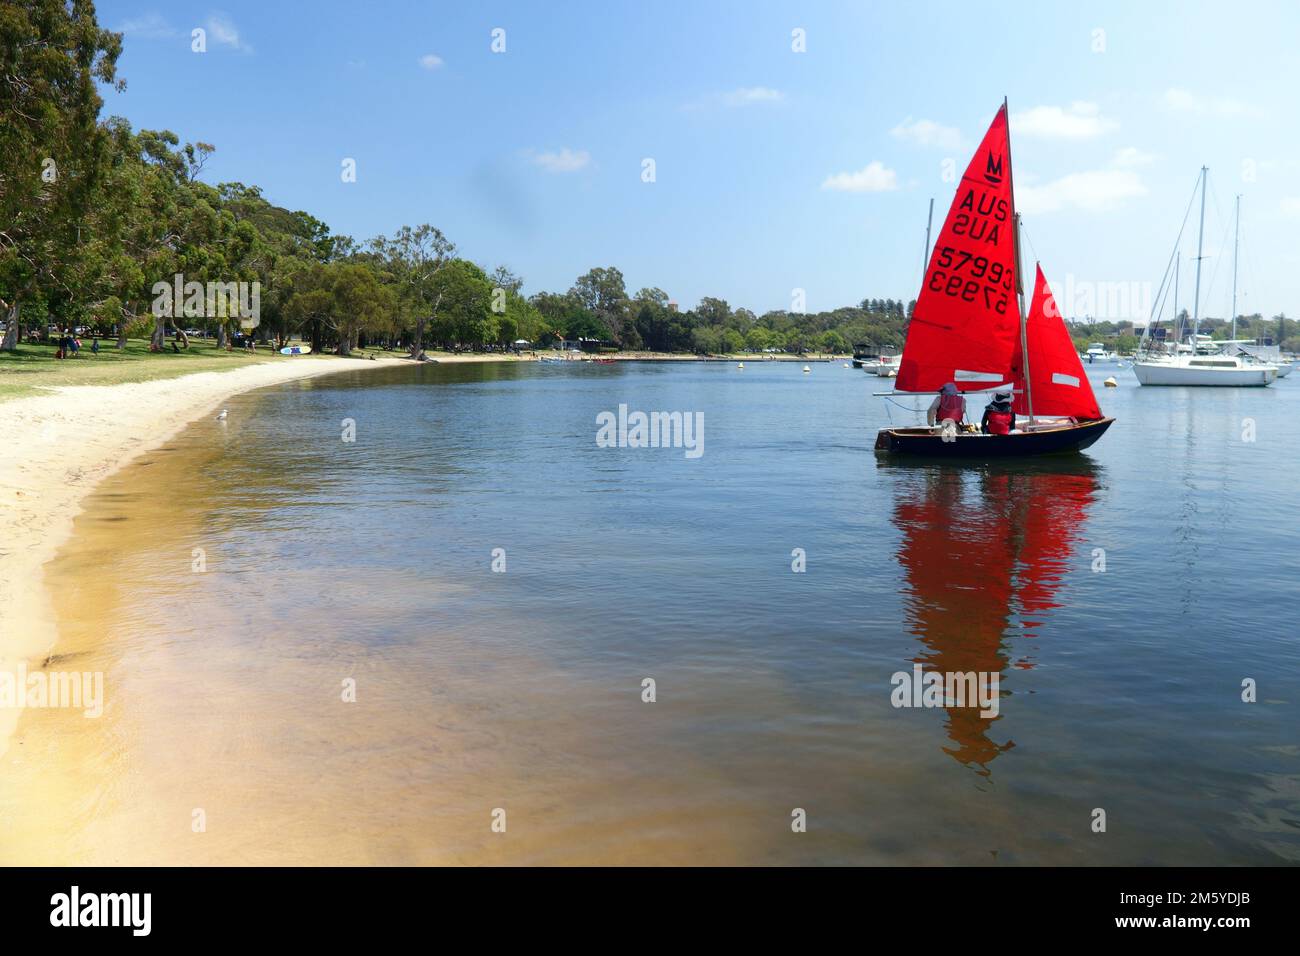 Gommone a vela speculare con vele rosse, Matilda Bay, Swan River, Perth, Australia Occidentale. No MR o PR Foto Stock